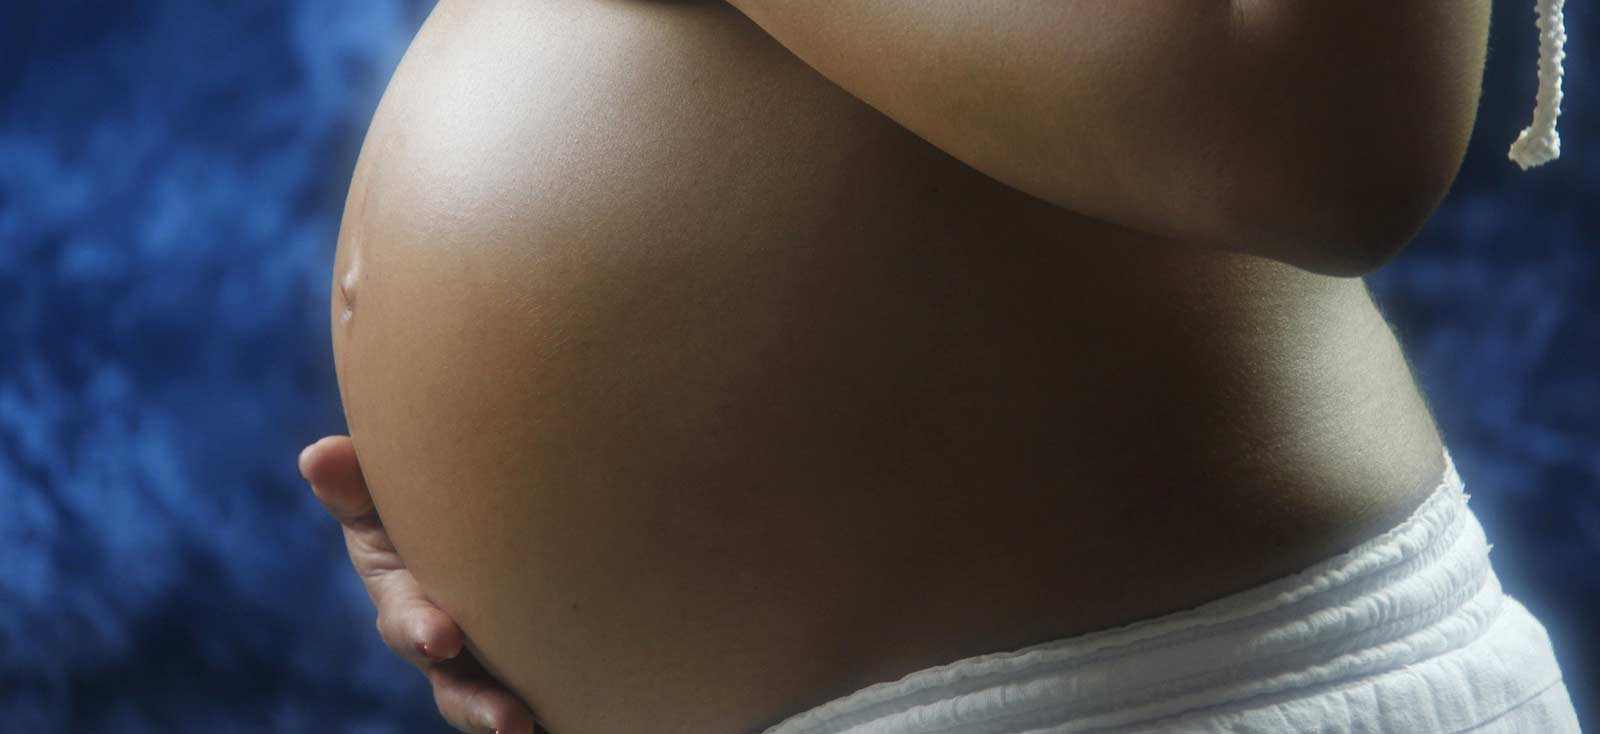 23 недели беременности с груди выделения фото 32